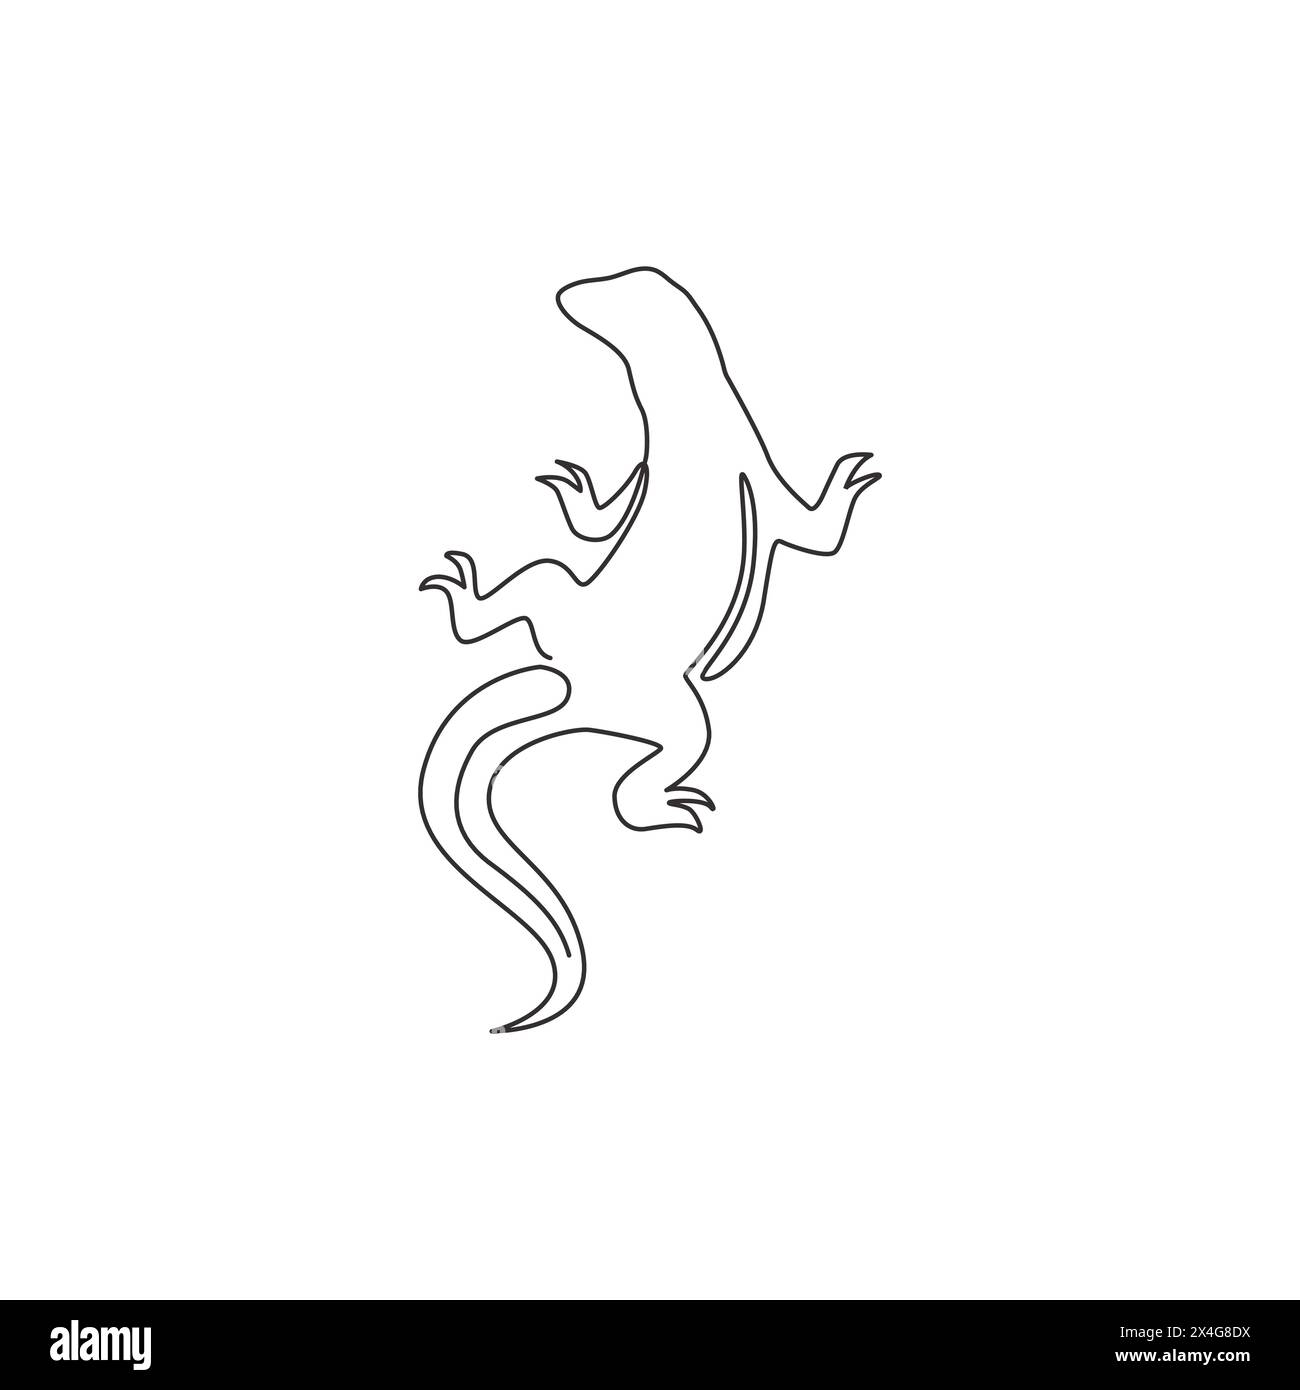 Un dessin simple ligne du dragon fort de komodo pour l'identité du logo de l'entreprise. Concept de mascotte animale prédateur dangereux pour zoo reptilien. Continuo tendance Illustration de Vecteur